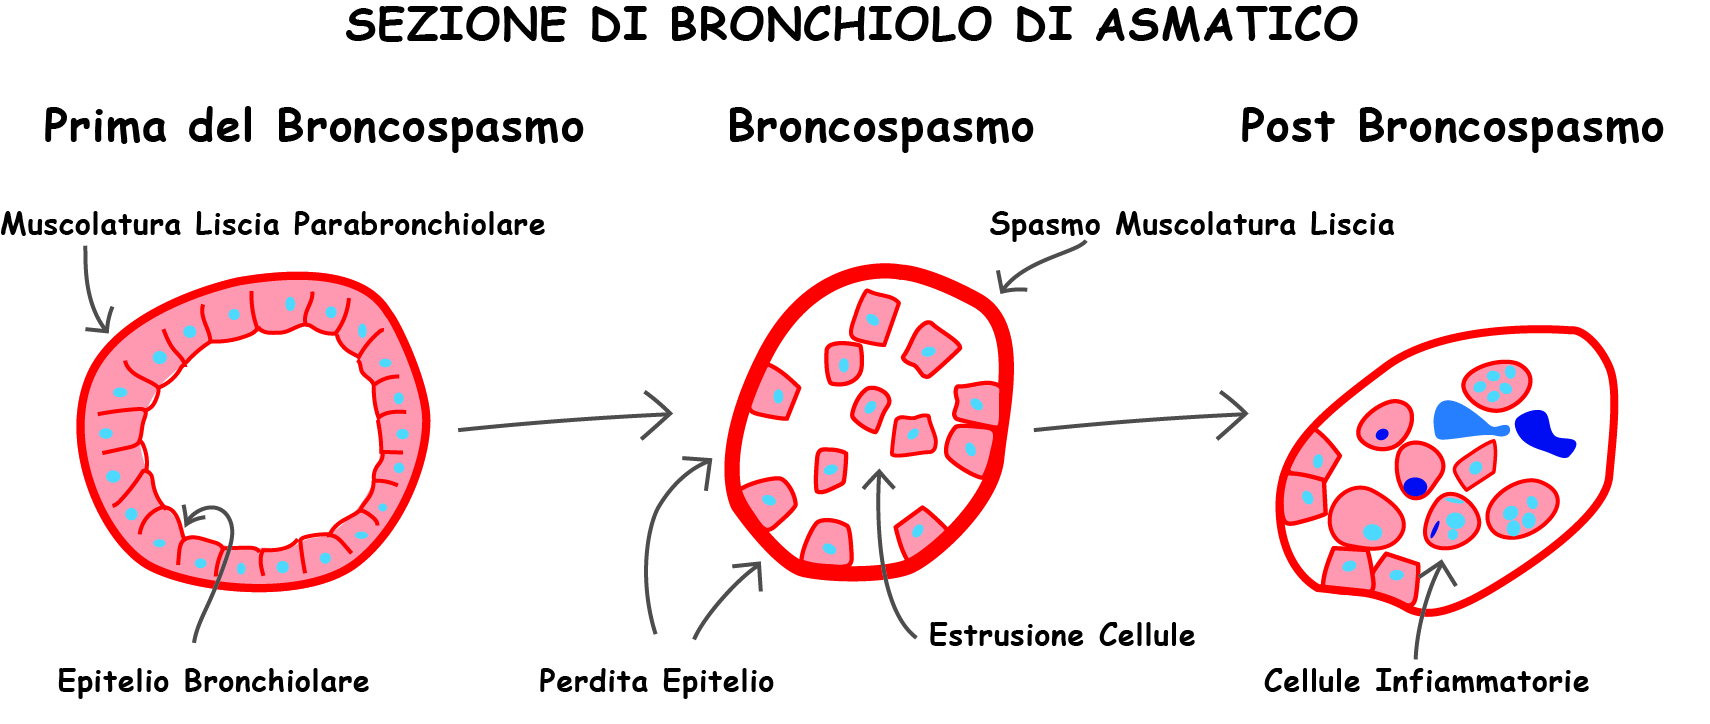 Sezione di Bronchiolo di Asmatico